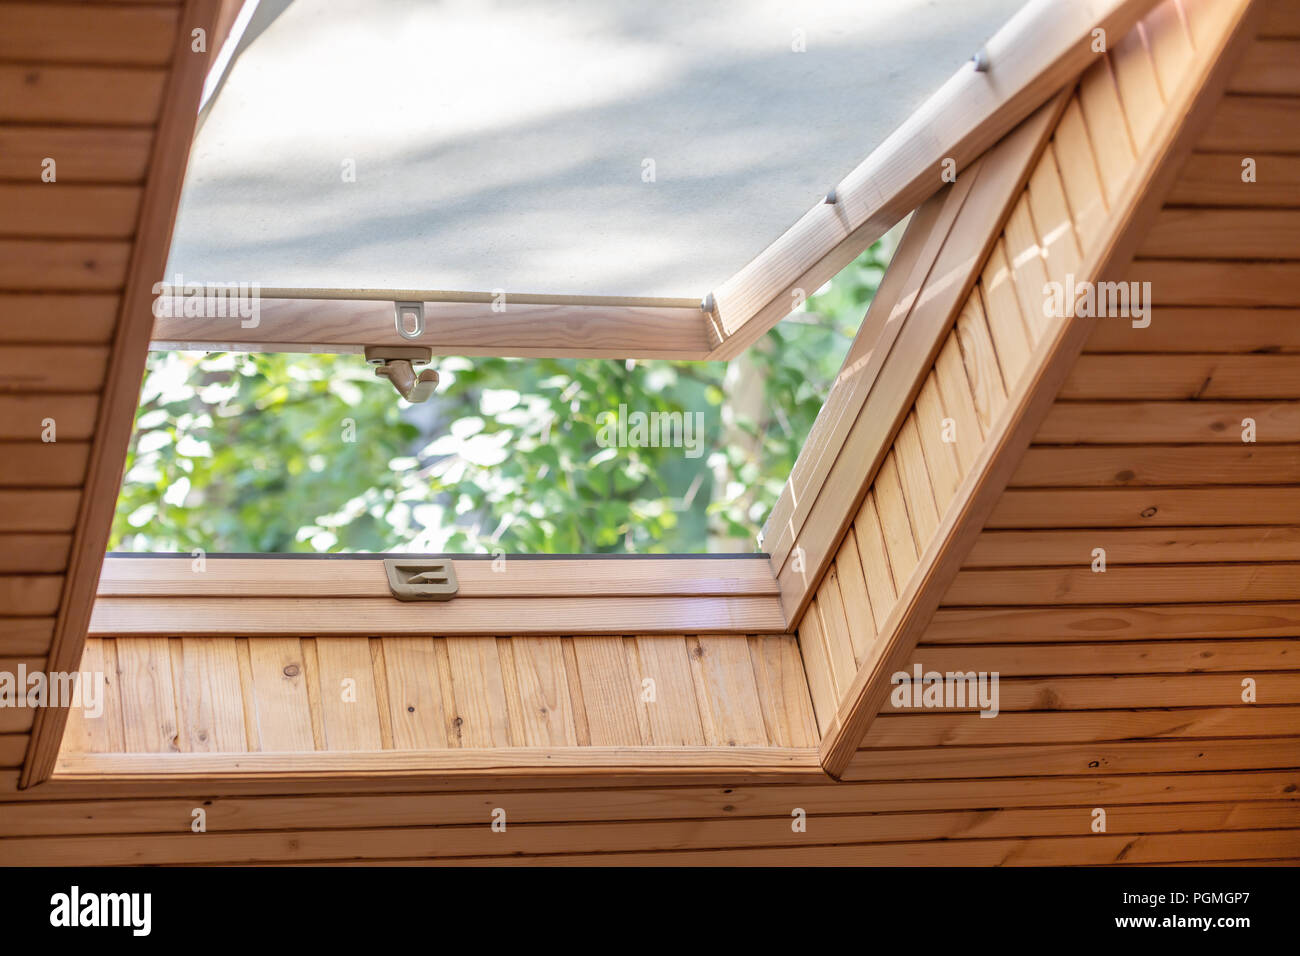 Abrir ventana de techo con persianas o cortinas en casa de madera de la  buhardilla. Habitación con techo inclinado hechas de materiales ecológicos  naturales y vistas al parque a través de abierto